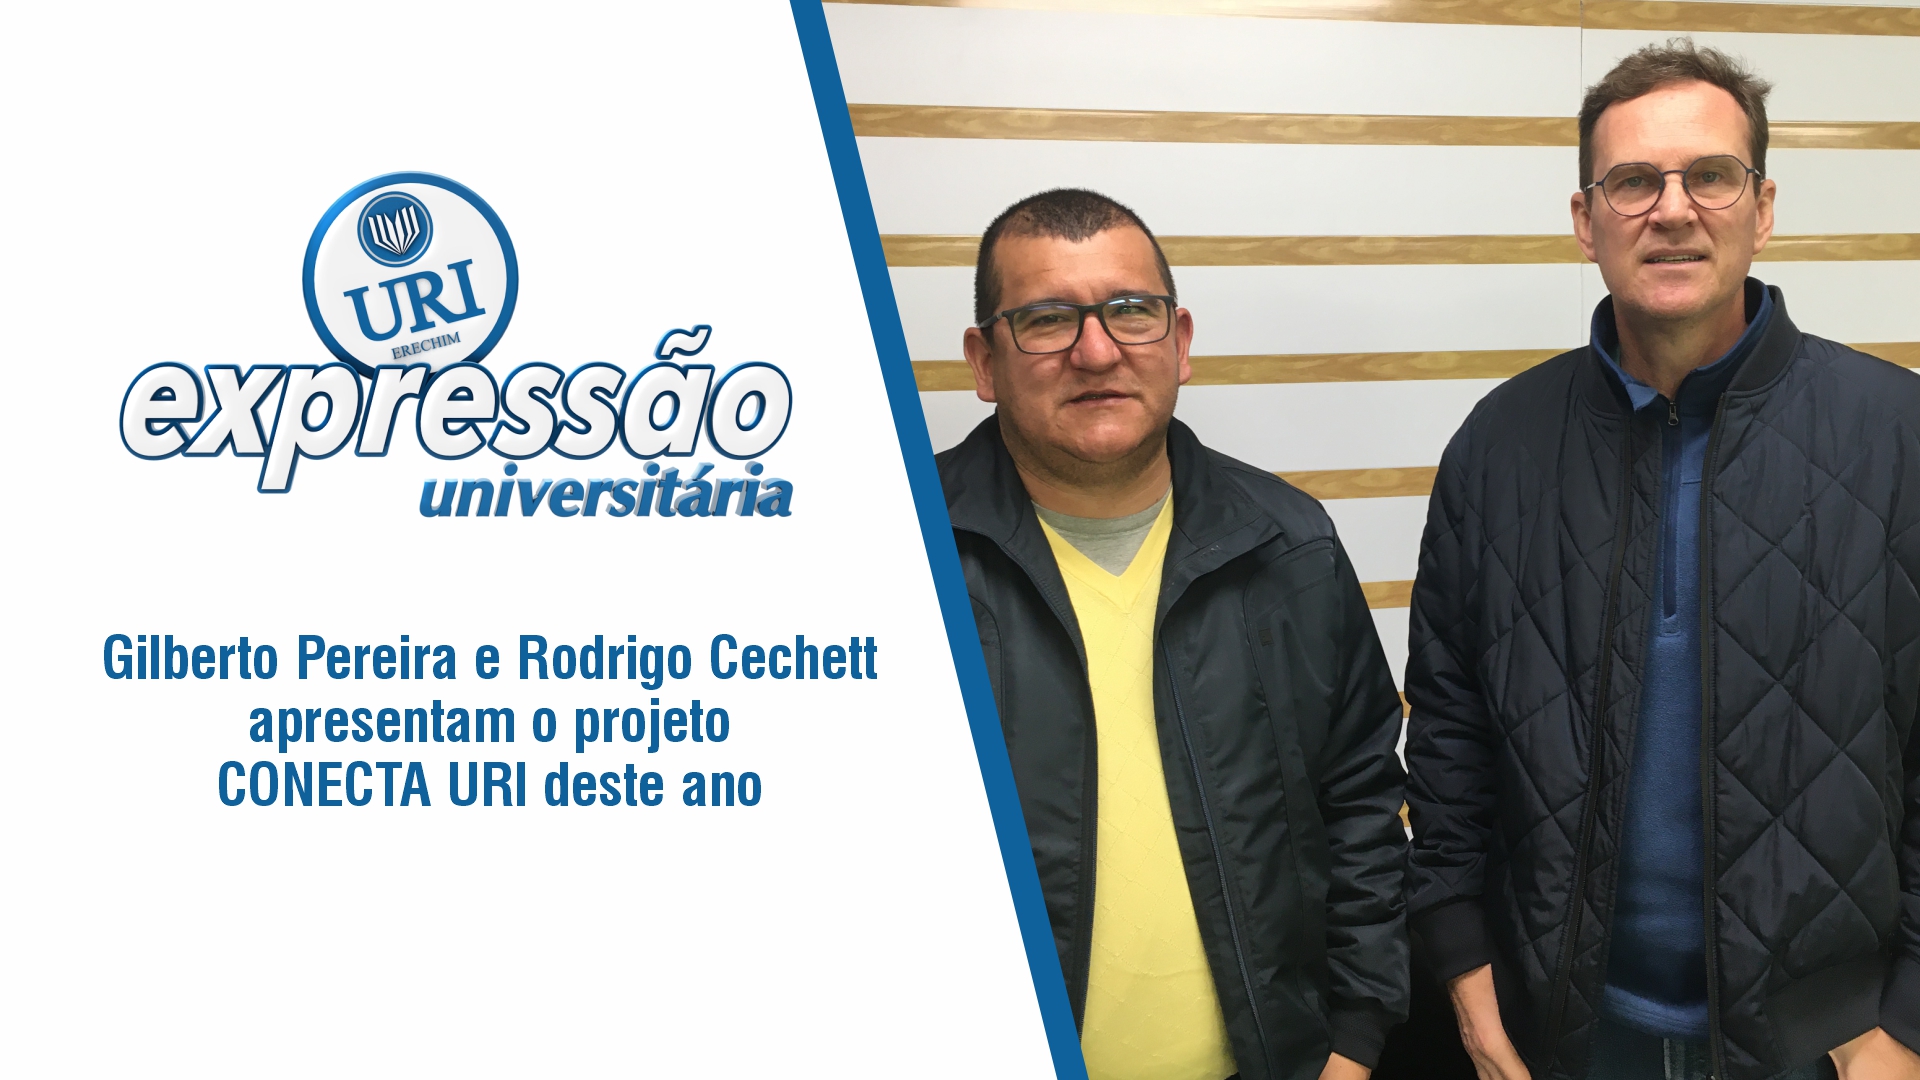 Gilberto Pereira e Rodrigo Cechett apresentam o projeto CONECTA URI deste ano.